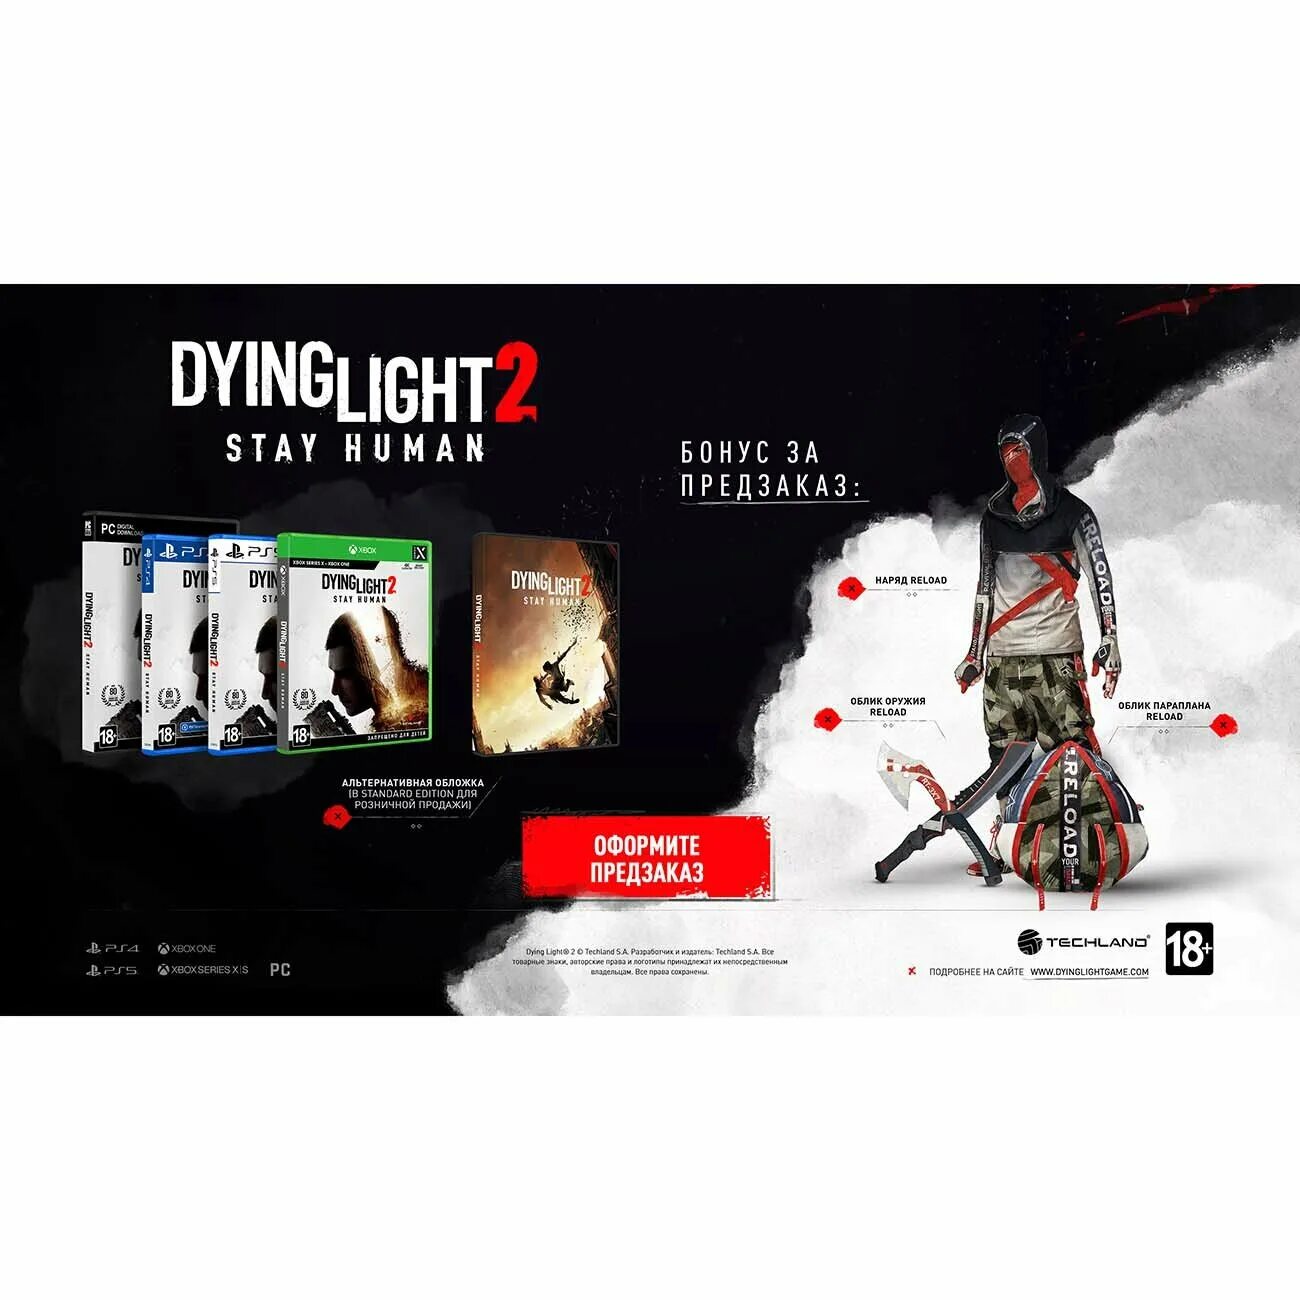 Dying Light 2 коллекционное издание предзаказ. Дайн Лайт 2 коллекционное издание. Dying Light 2 коллекционное издание. Коллекционки Dying Light 2: stay Human. Stay human отзывы